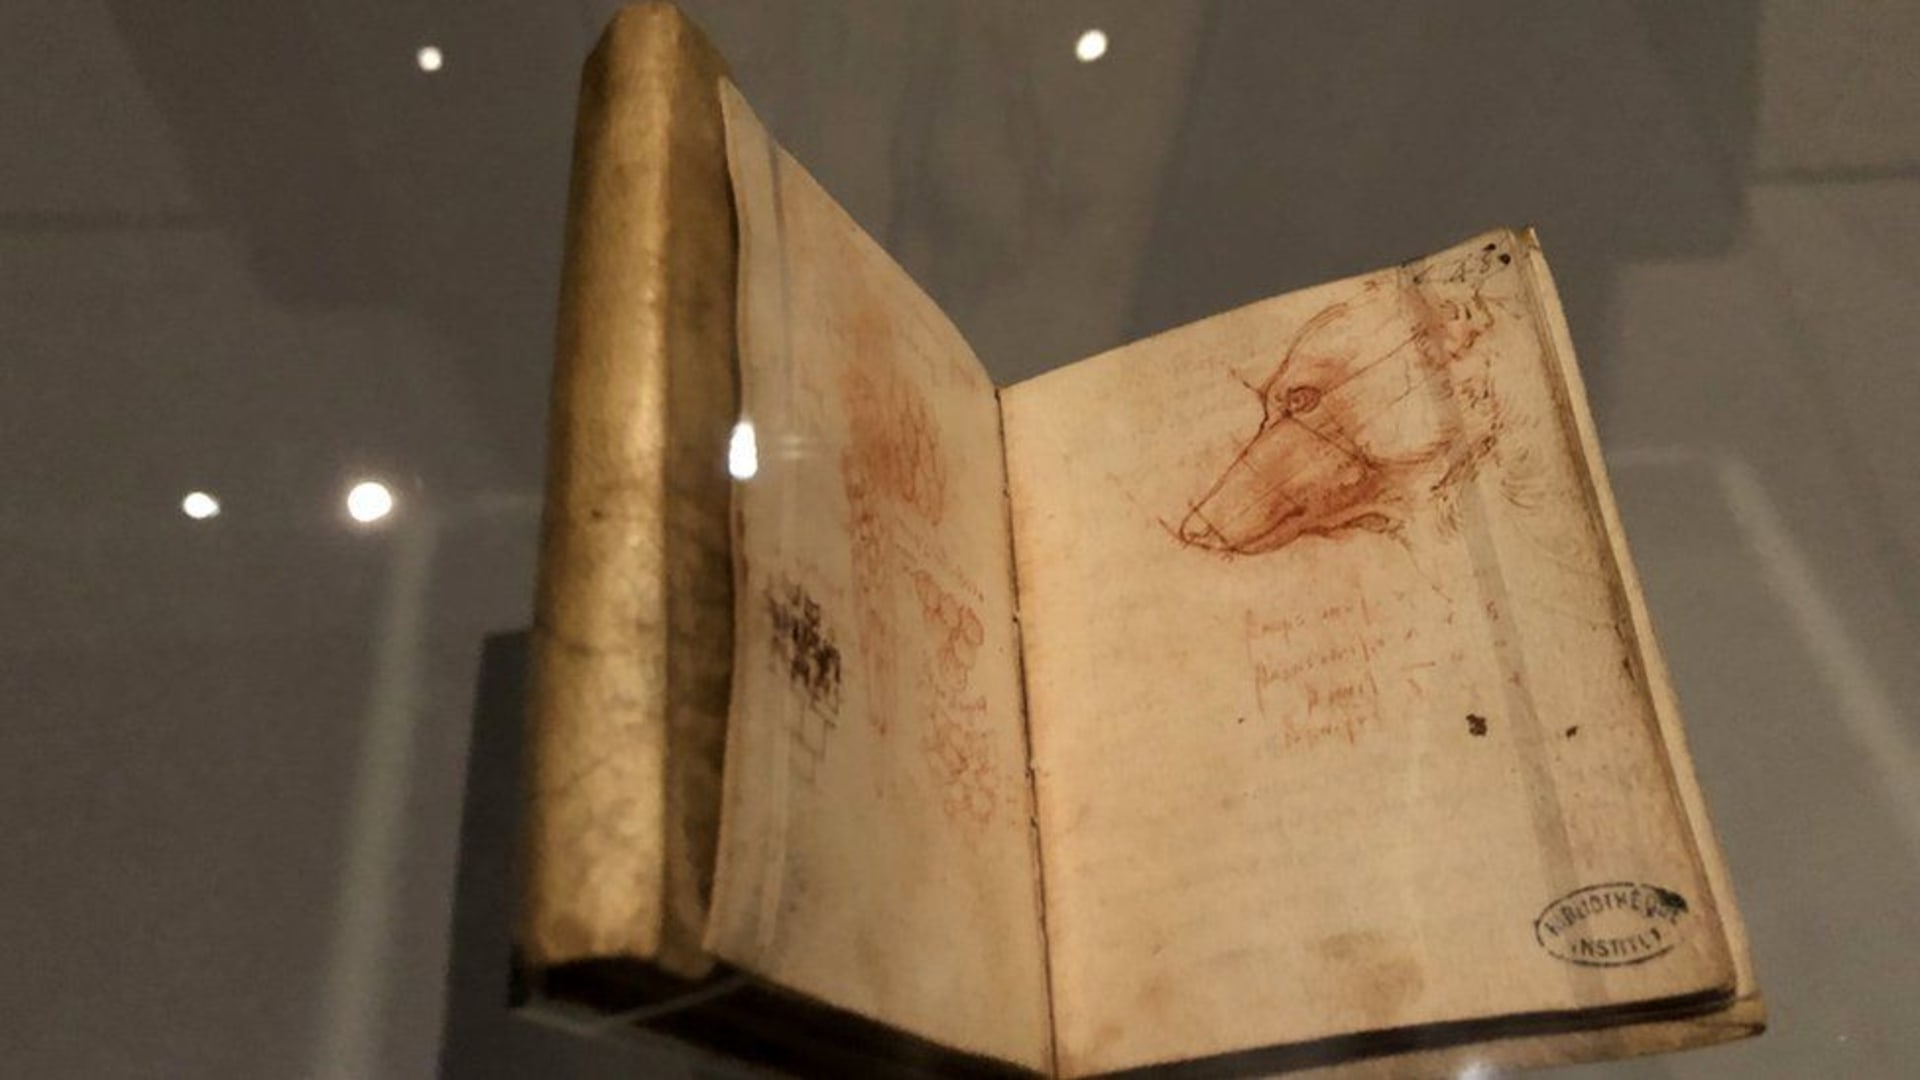 Nakreslená podobizna psa v jednom z da Vinciho deníků